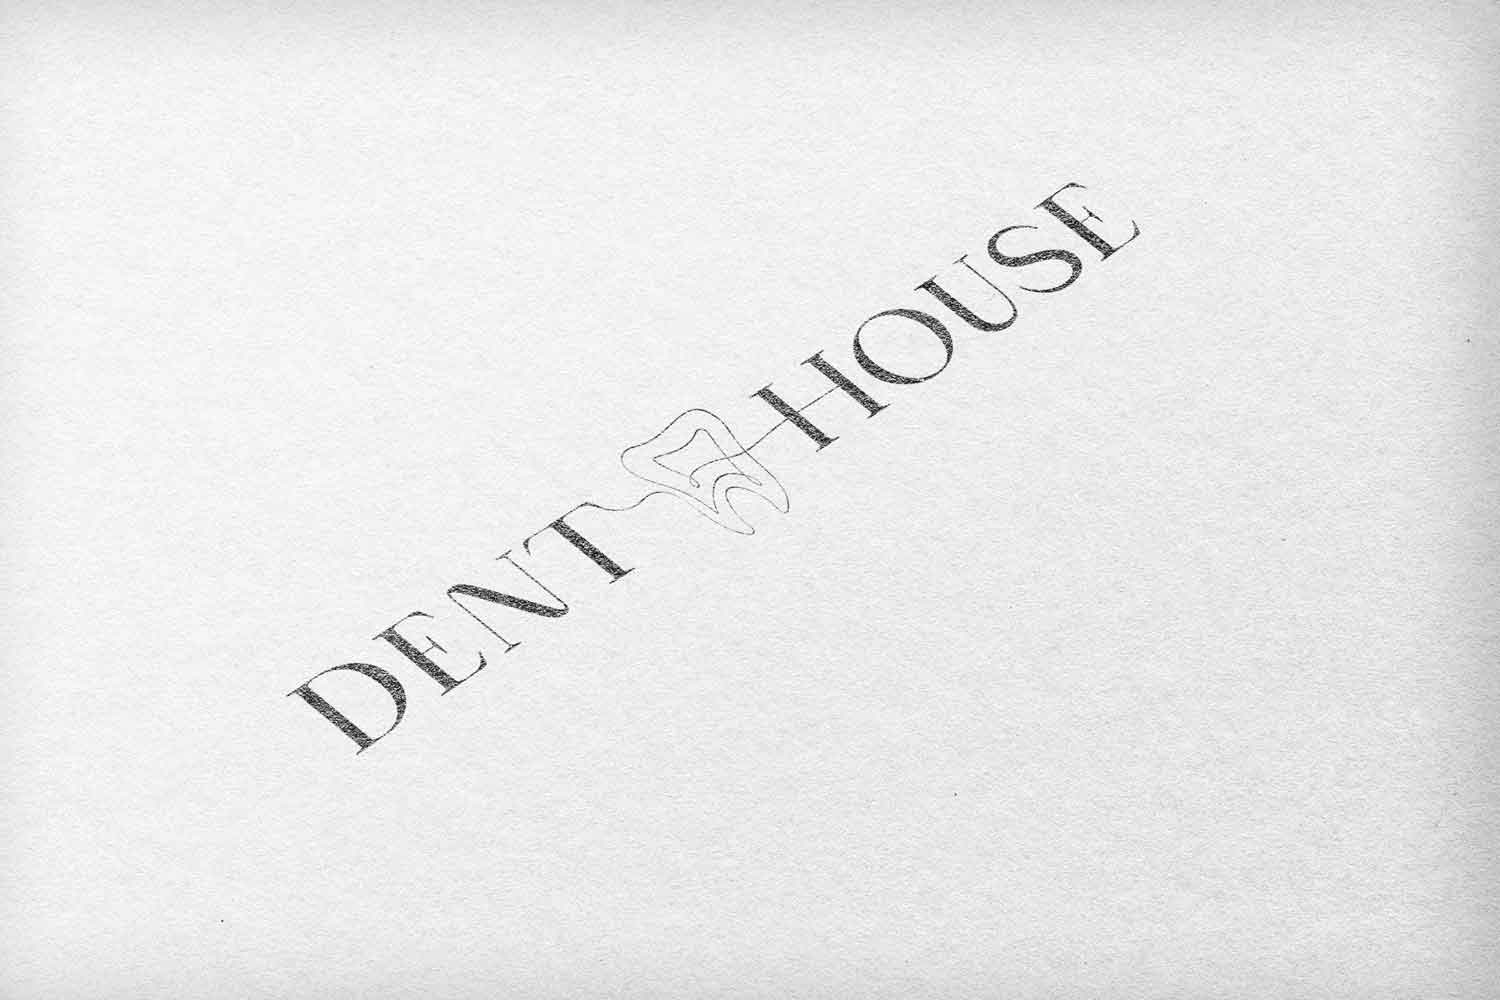 (c) Dent-house.com